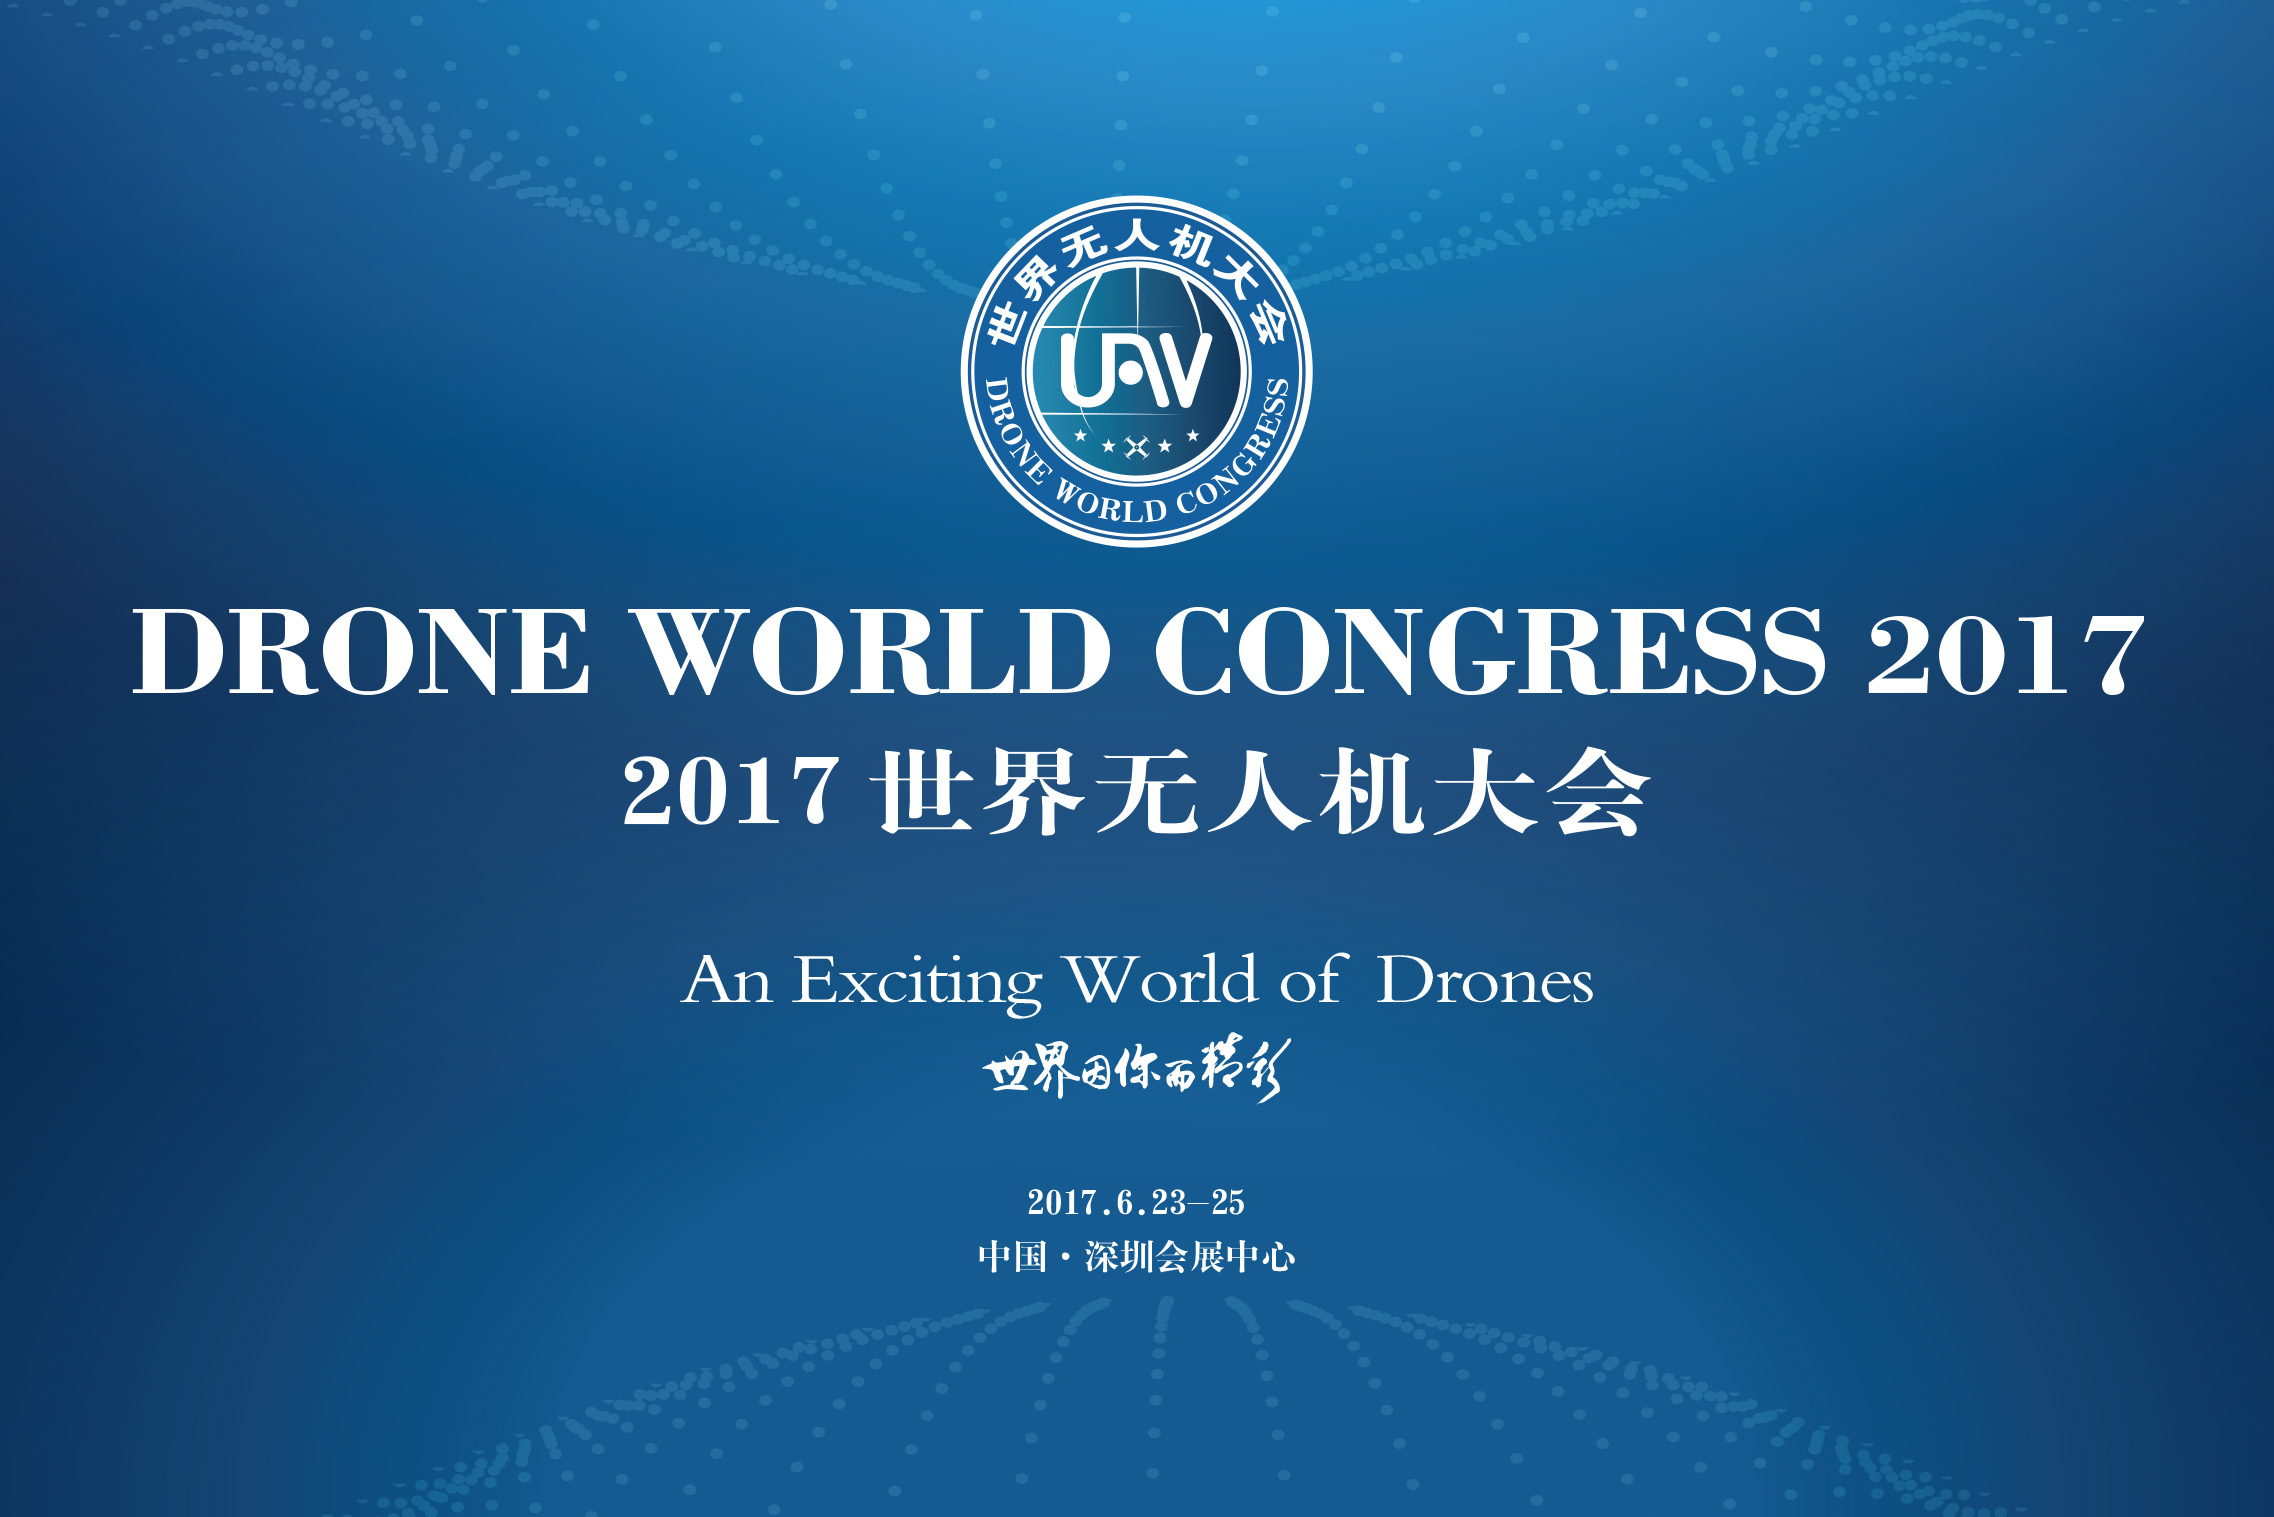 【邀请函】模幻天空邀您参加2017世界无人机大会 · 深圳国际无人机展览会